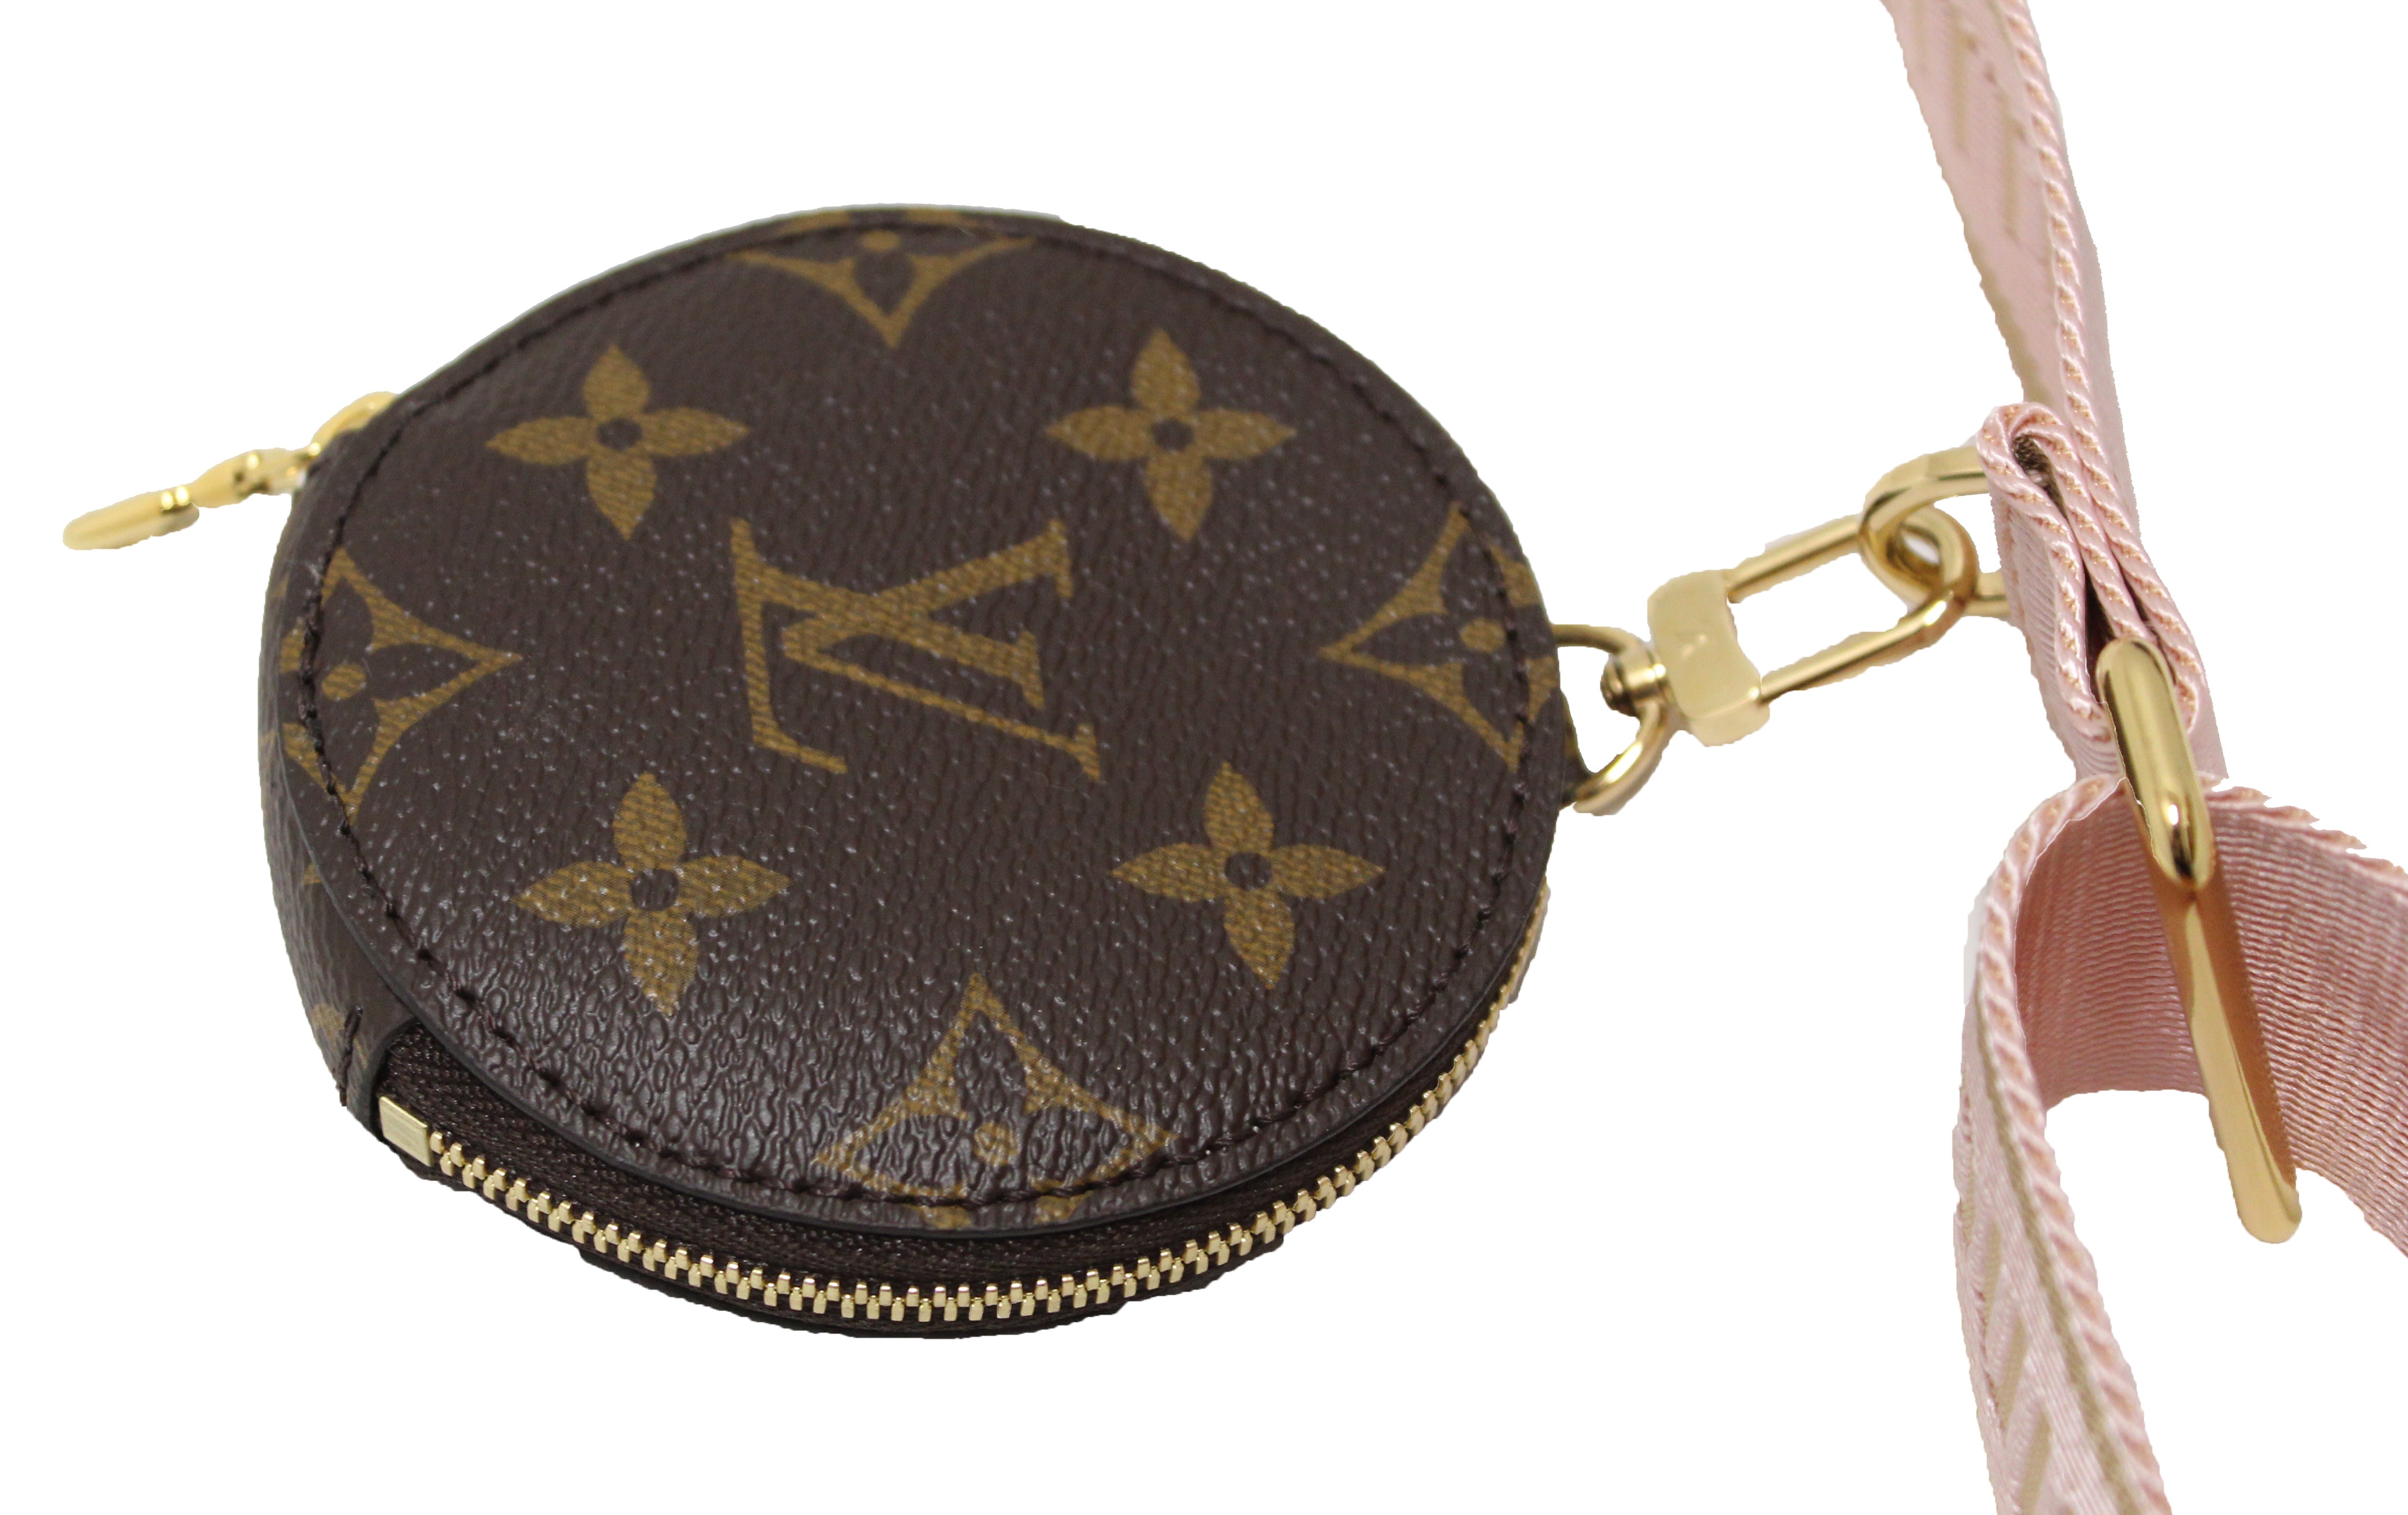 Louis Vuitton Multi Pochette Accessoires Monogram – The Luxury Shopper